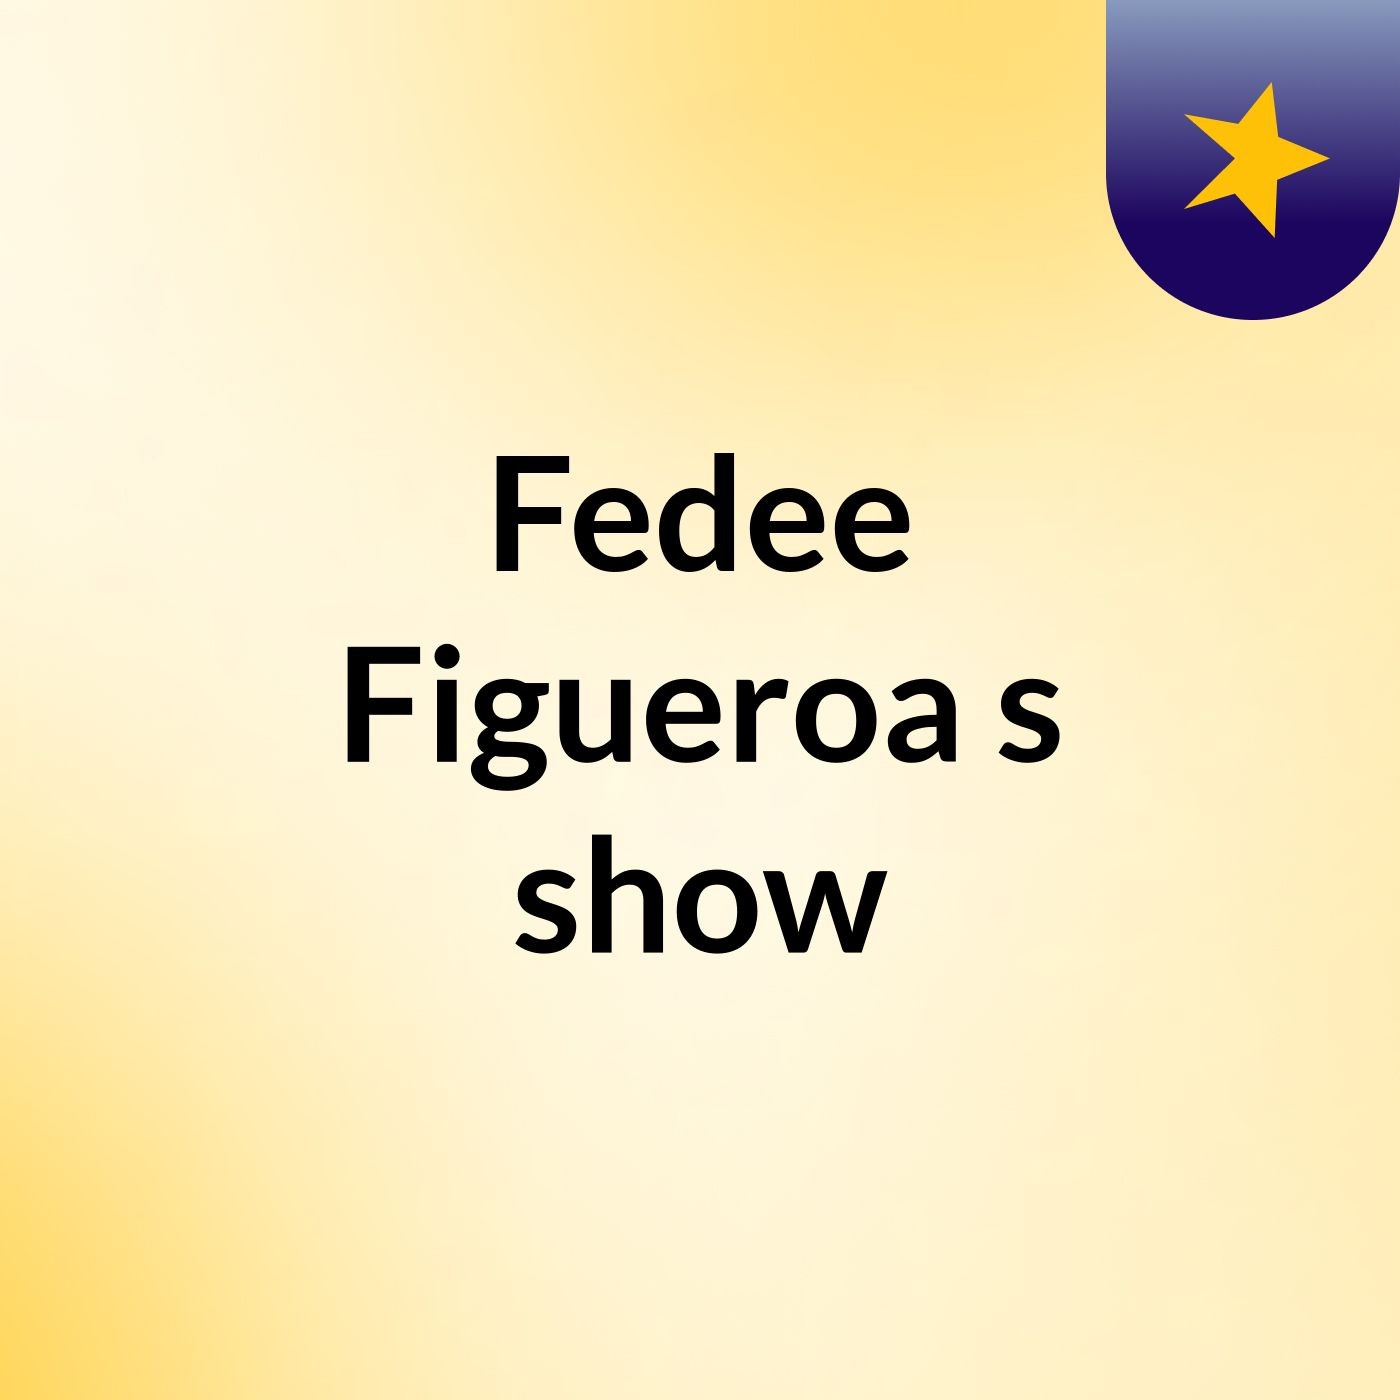 Fedee Figueroa's show